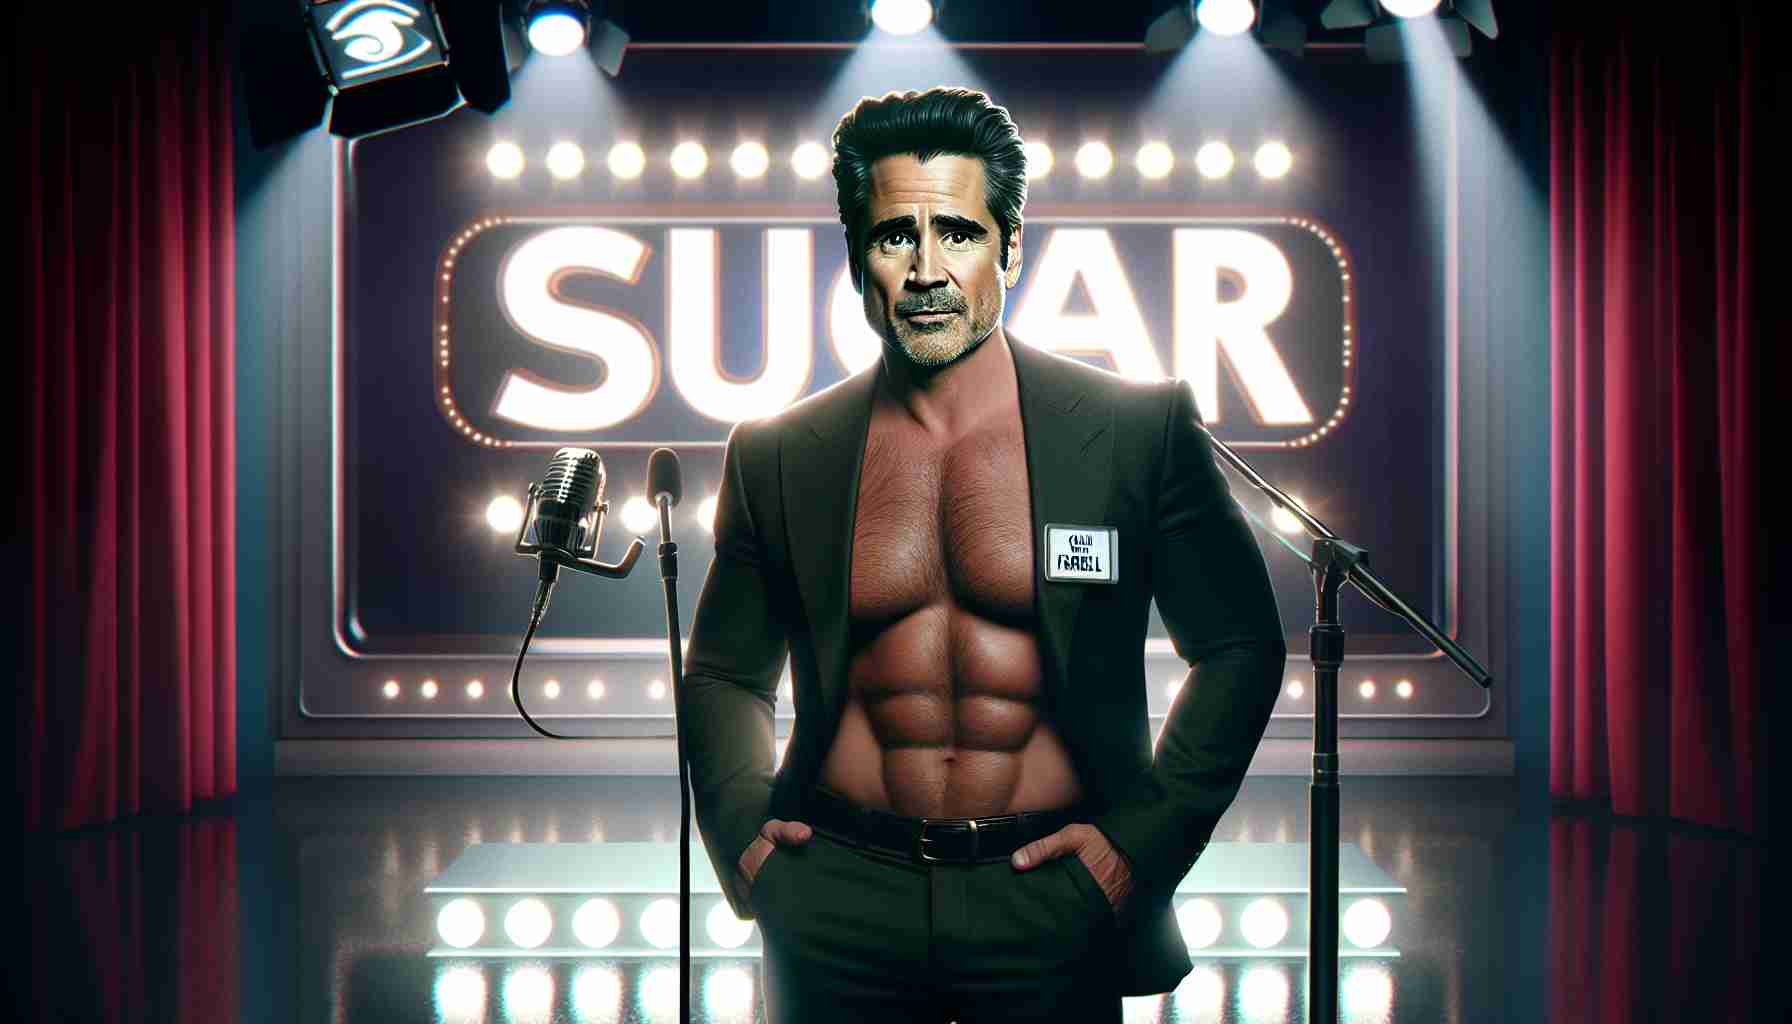 Colin Farrell Takes the Spotlight in Apple TV+’s “Sugar”